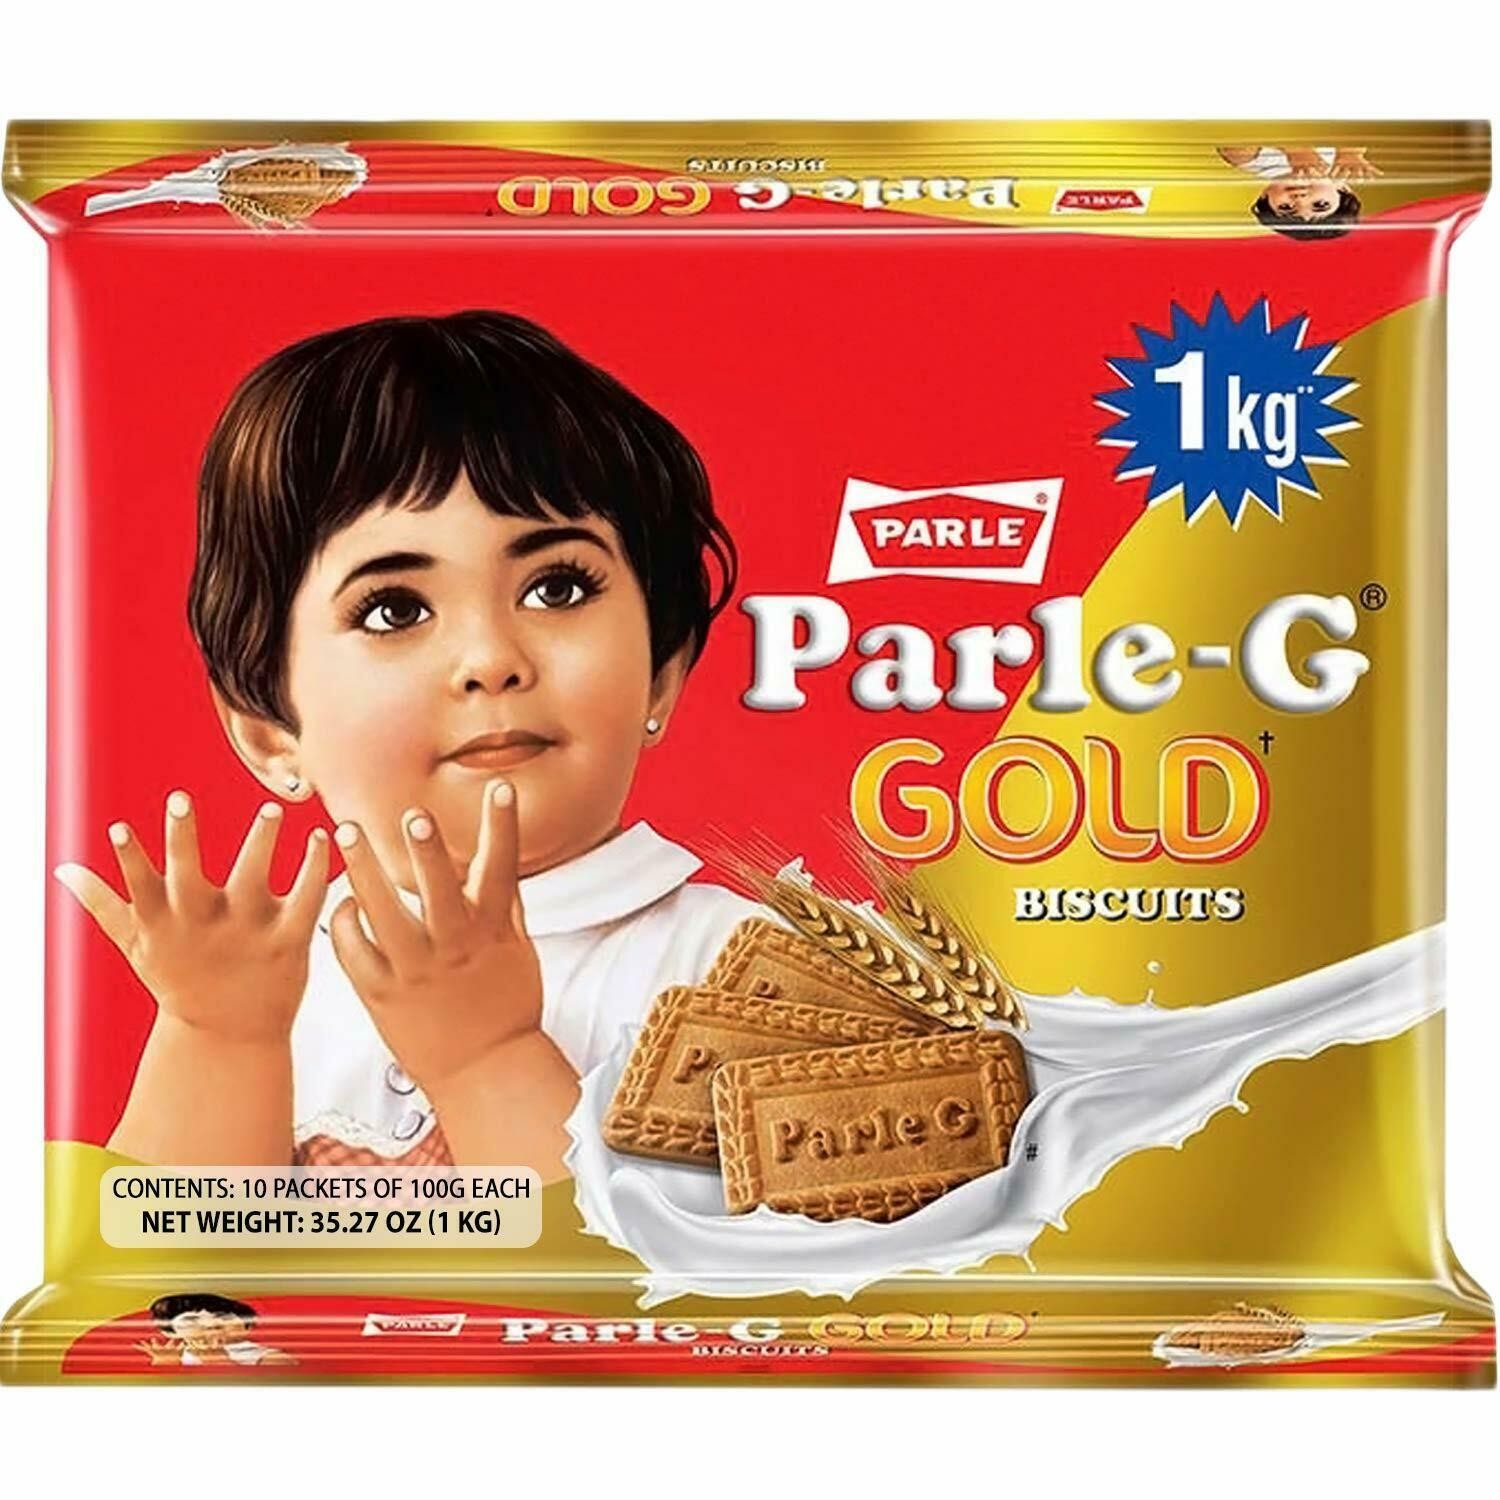 Parle-G Gold Value Pack 35oz